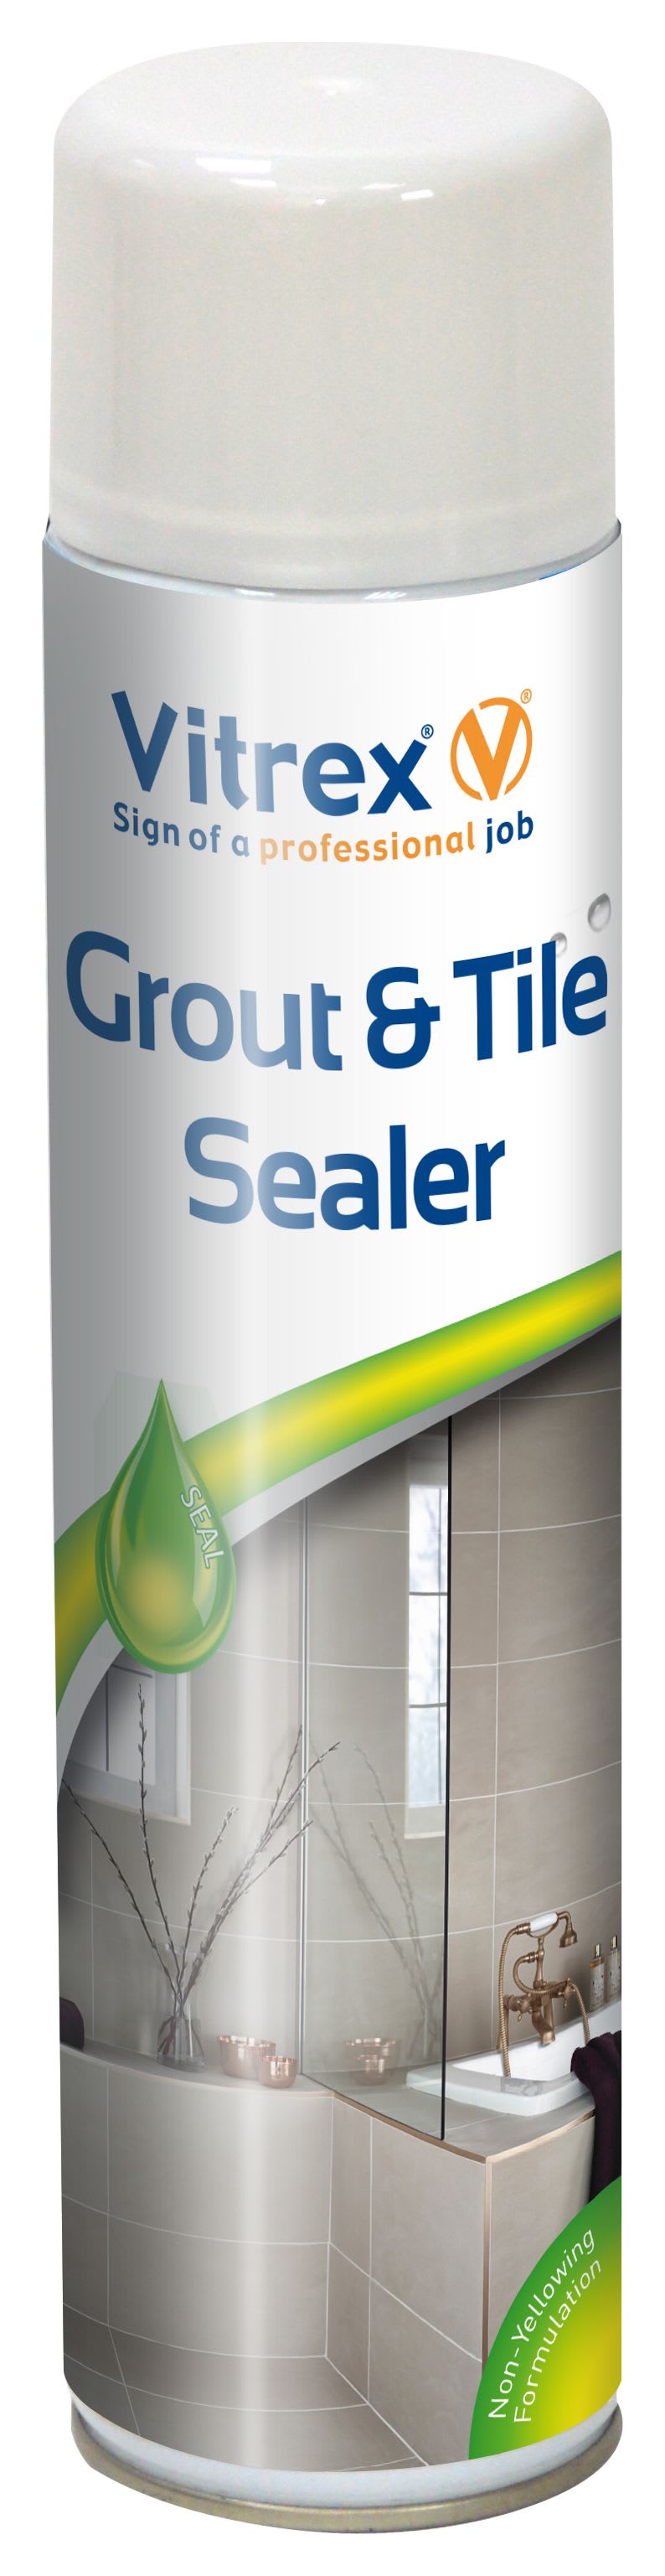 Vitrex Grout & Tile Sealer 600ml